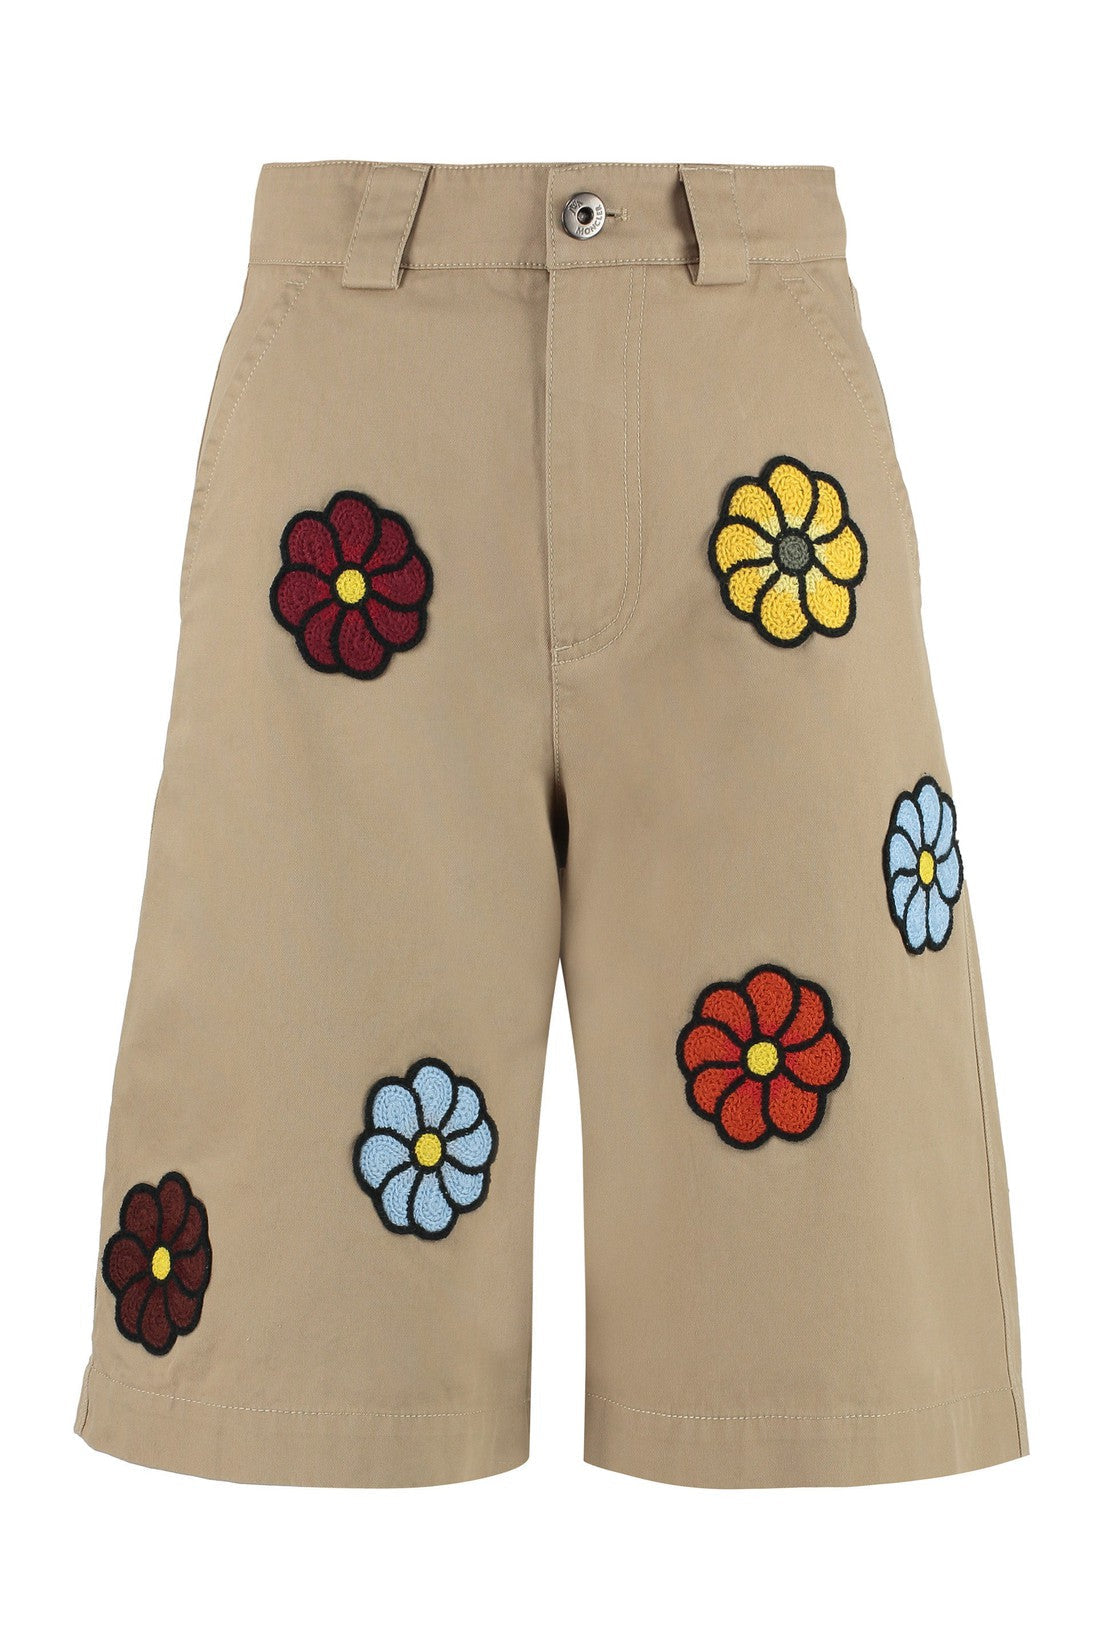 Moncler Genius-OUTLET-SALE-1 Moncler x JW Anderson - Cotton bermuda shorts-ARCHIVIST